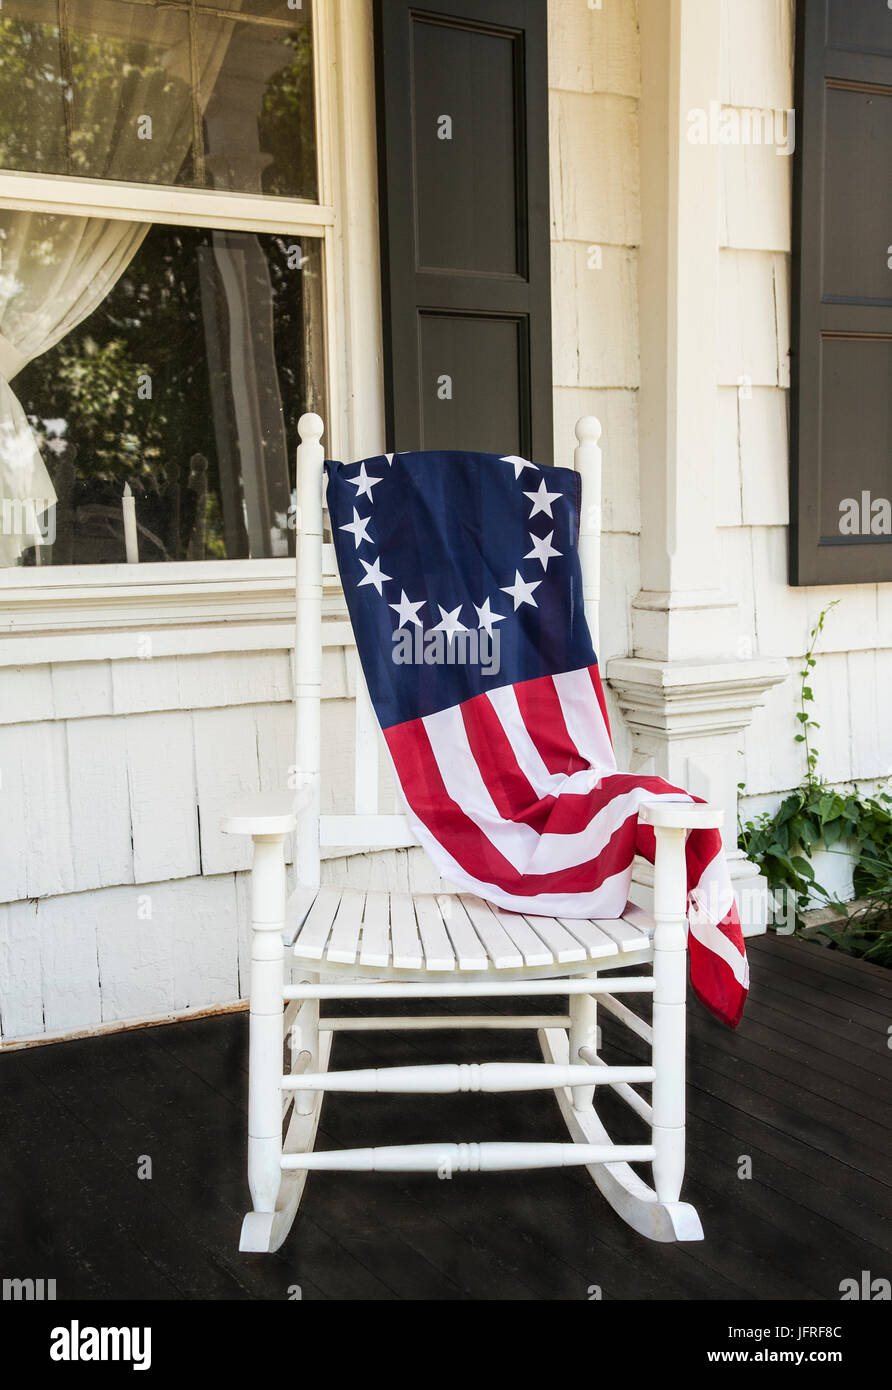 Betsy Ross flag 13 Sterne auf einem Holzschaukelstuhl, historische Bauernhausmöbel vor der Veranda in Freehhold Township, New Jersey, USA, US-Flagge 2017 Stockfoto